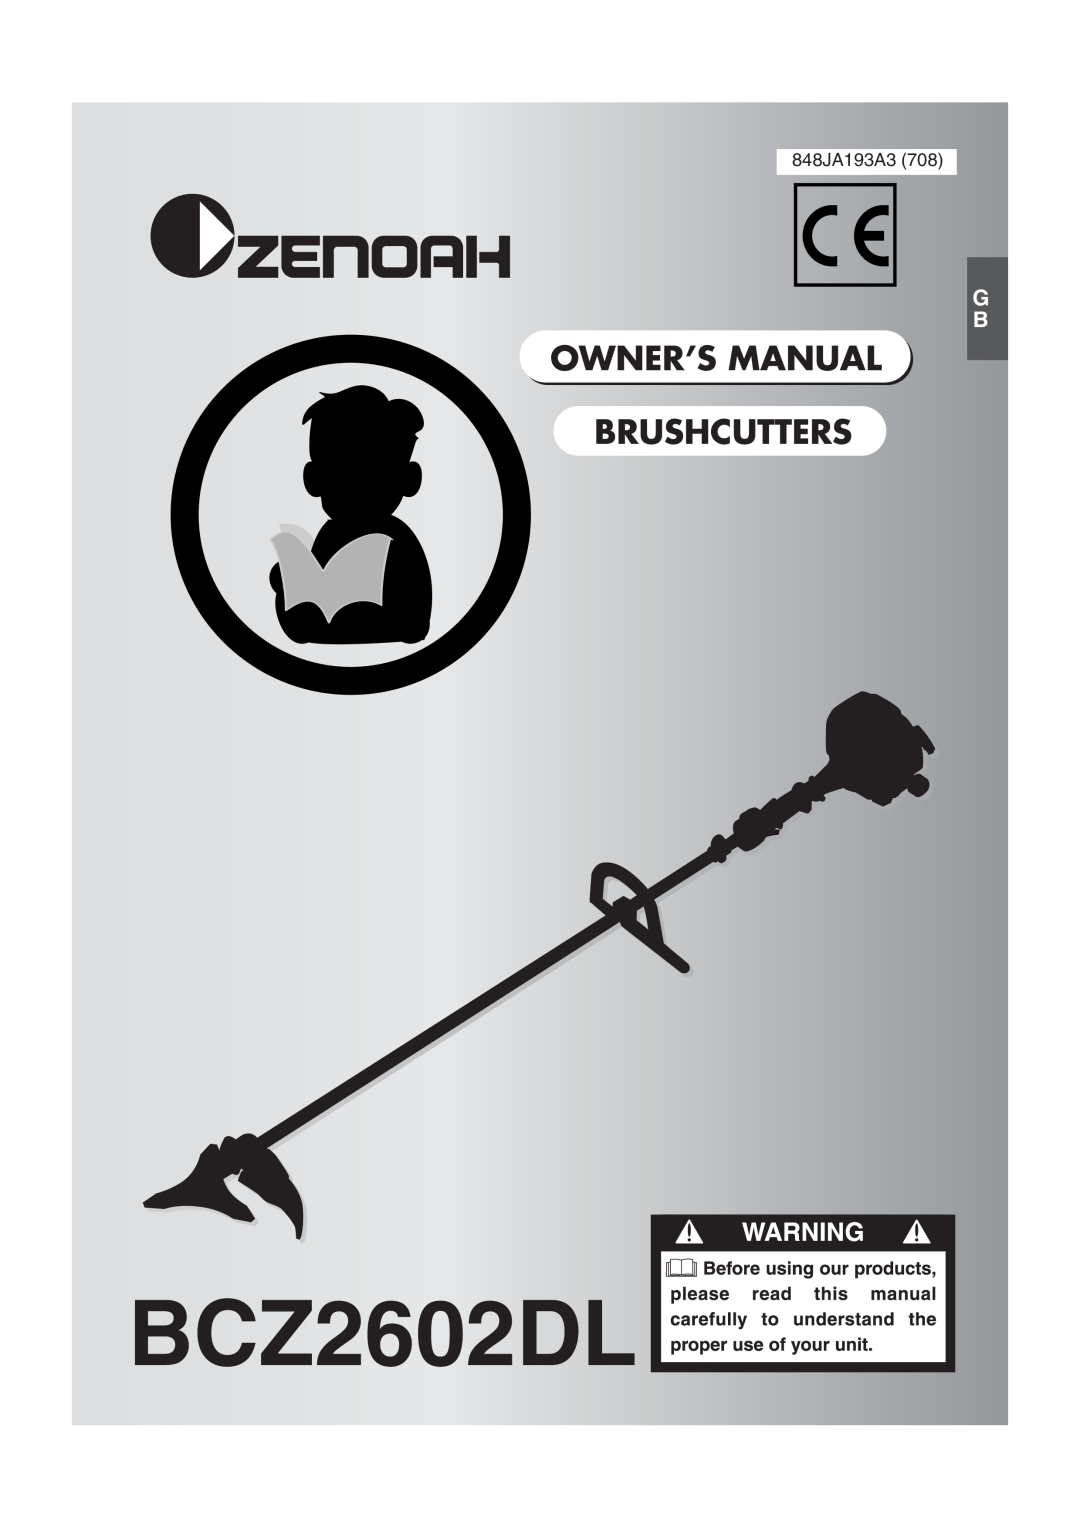 Zenoah BCZ2602DL owner manual 848JA193A3 